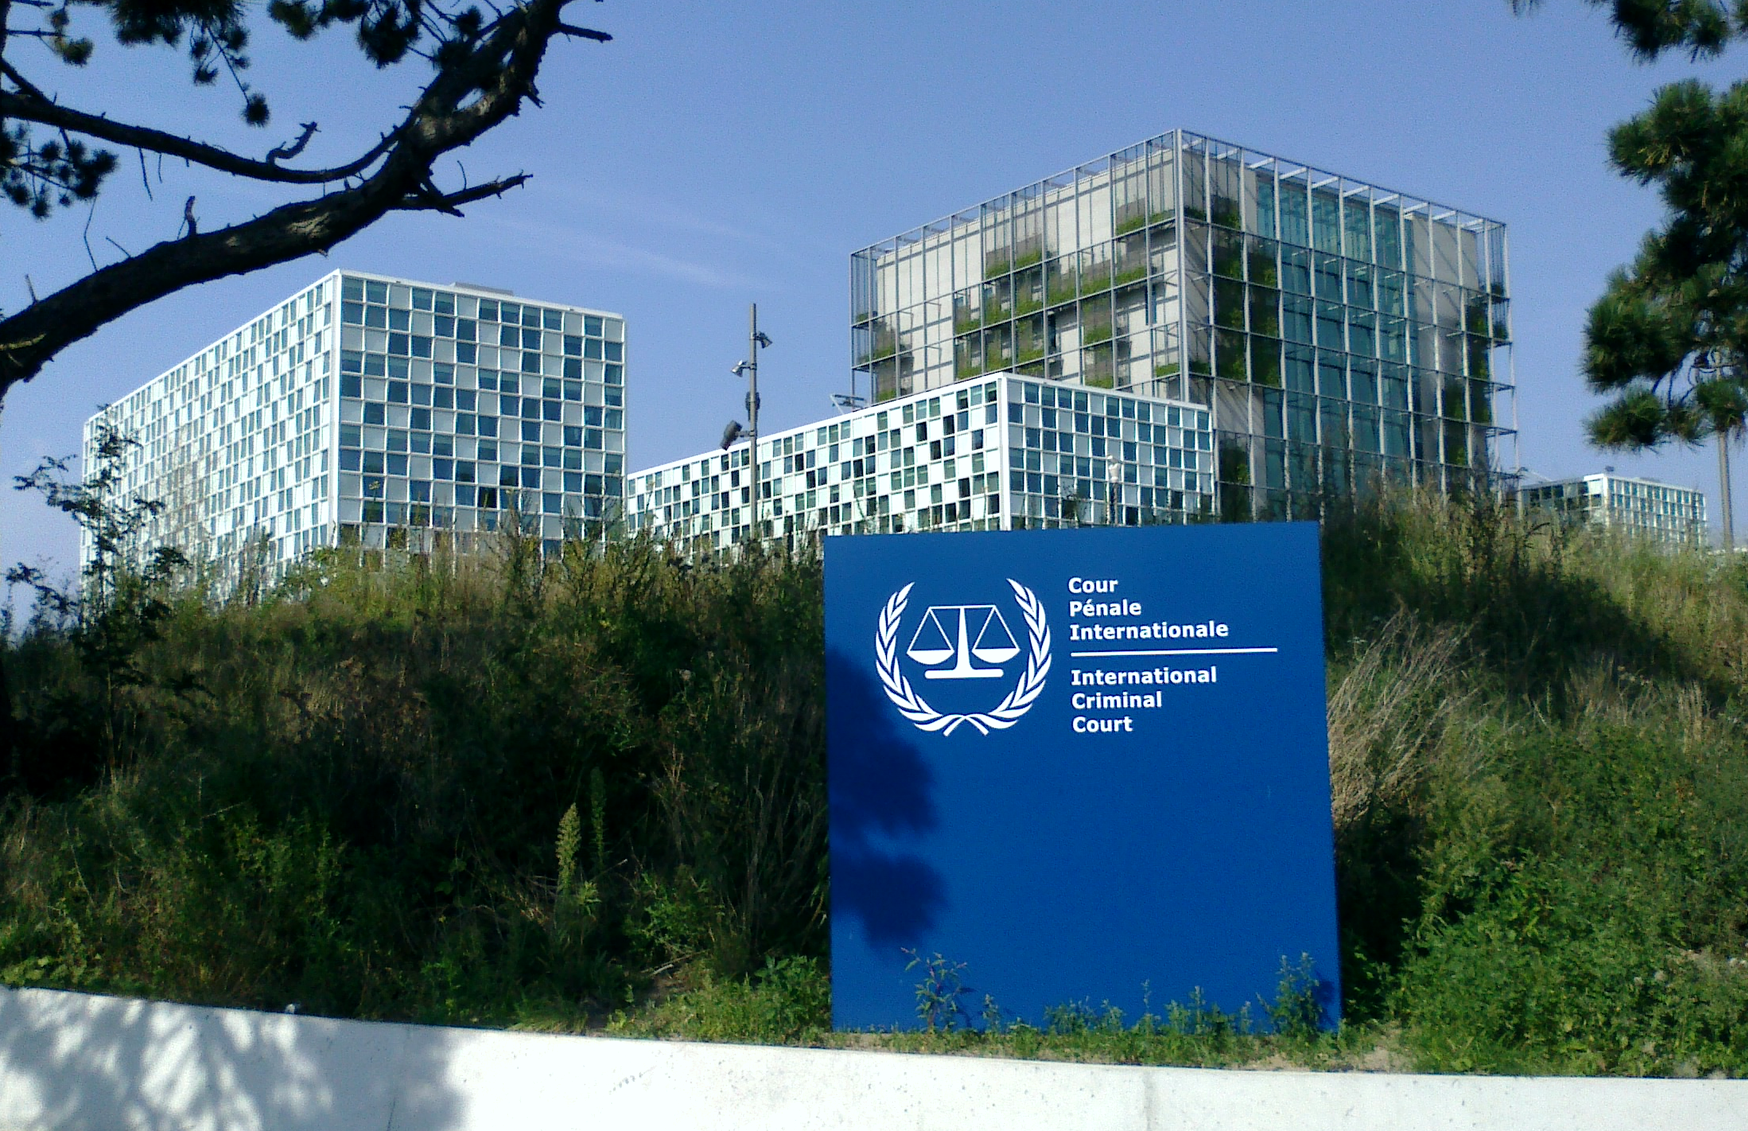 Internationeler Strafgerichtshof - Den Haag